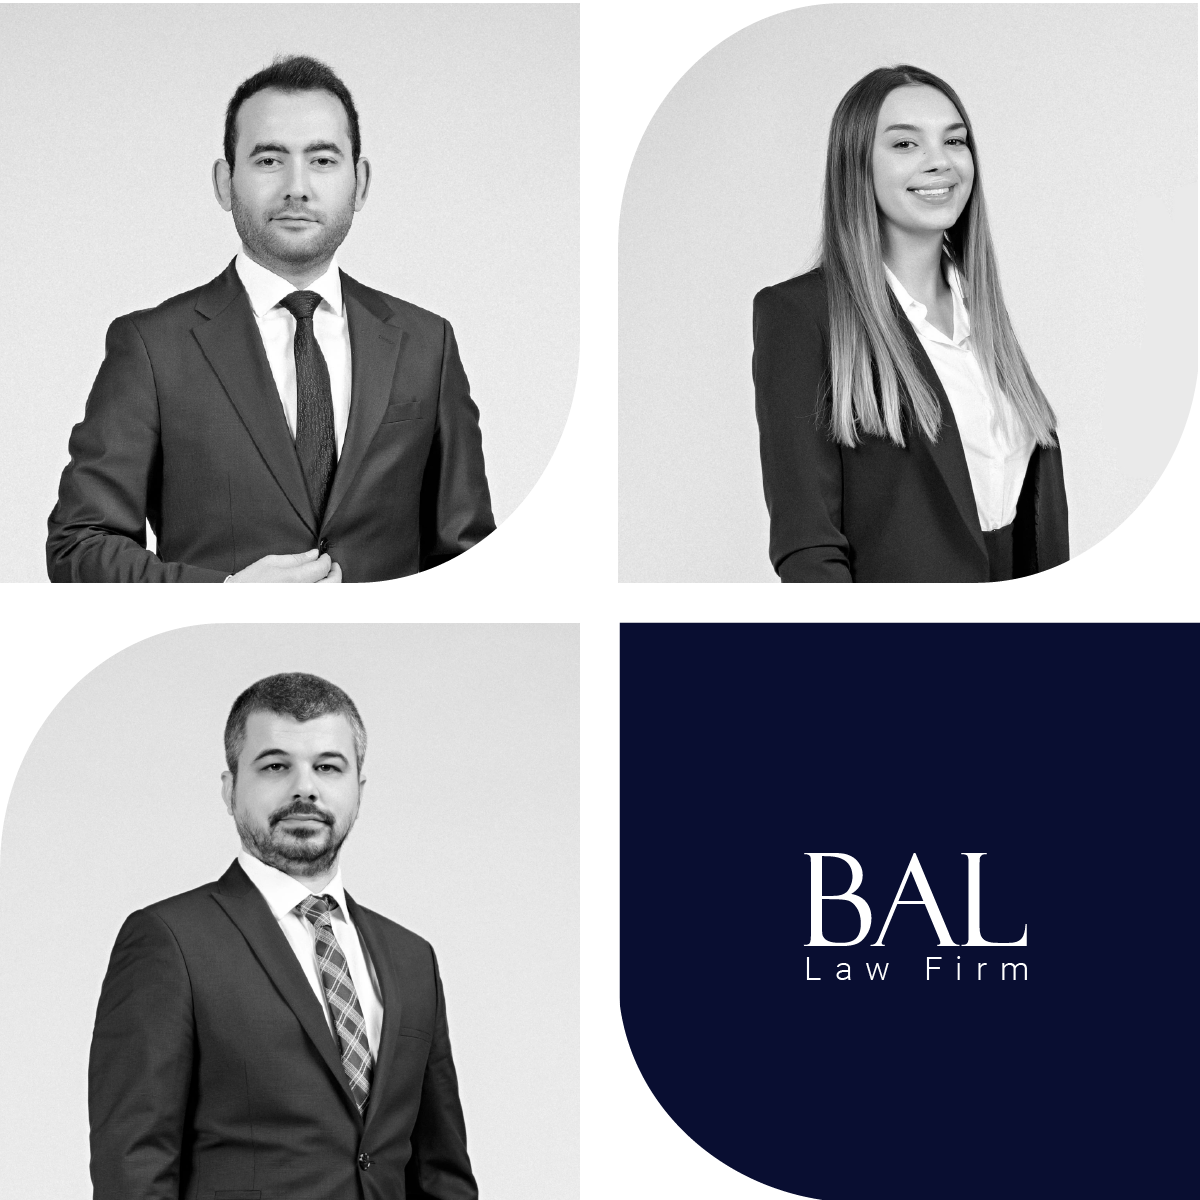 bal law firm istanbul turkey lawyers best